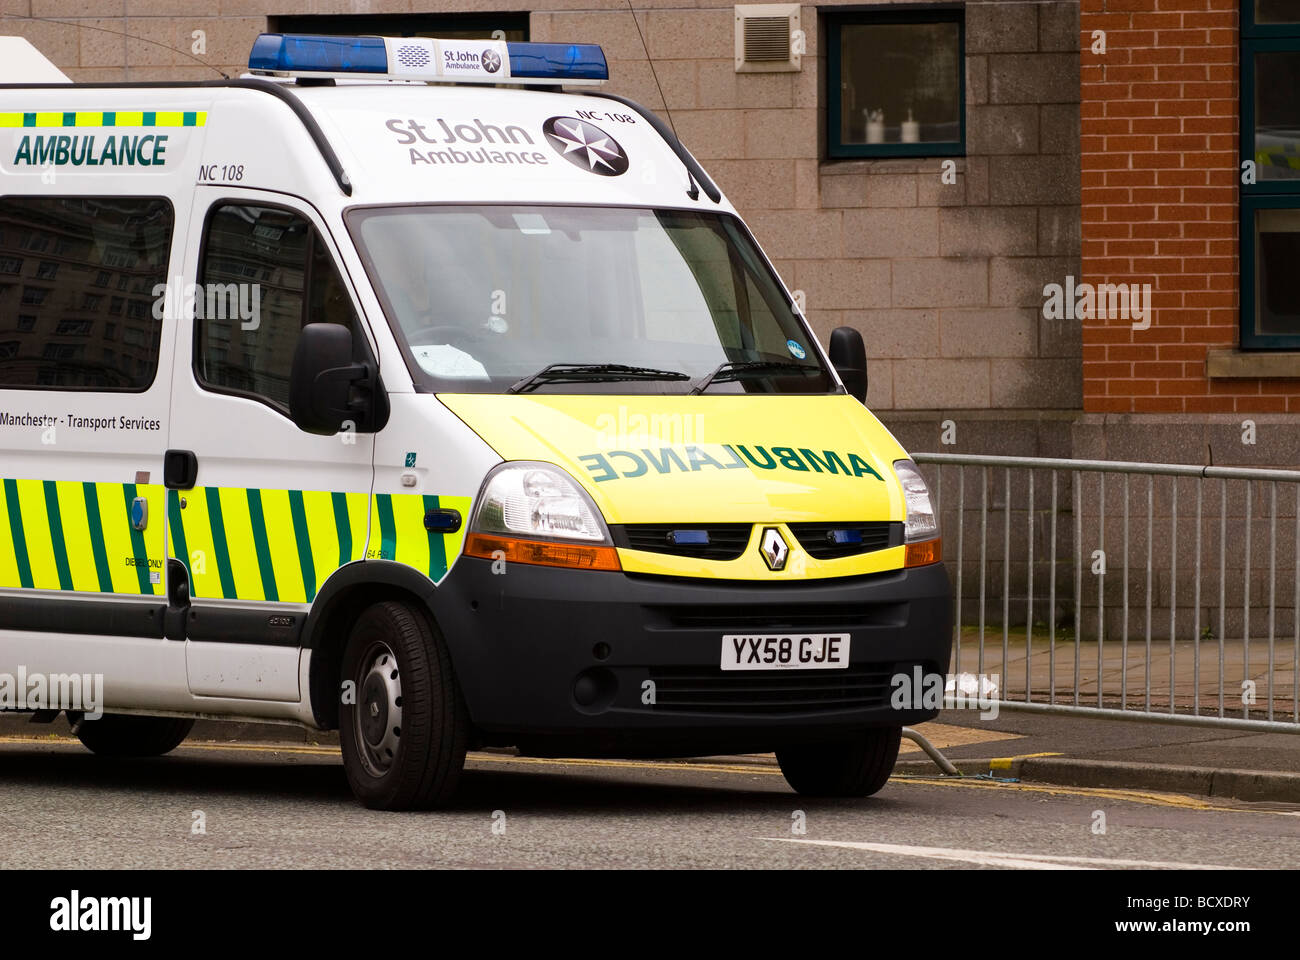 St.John ambulance véhicule dans le centre-ville de Manchester Banque D'Images